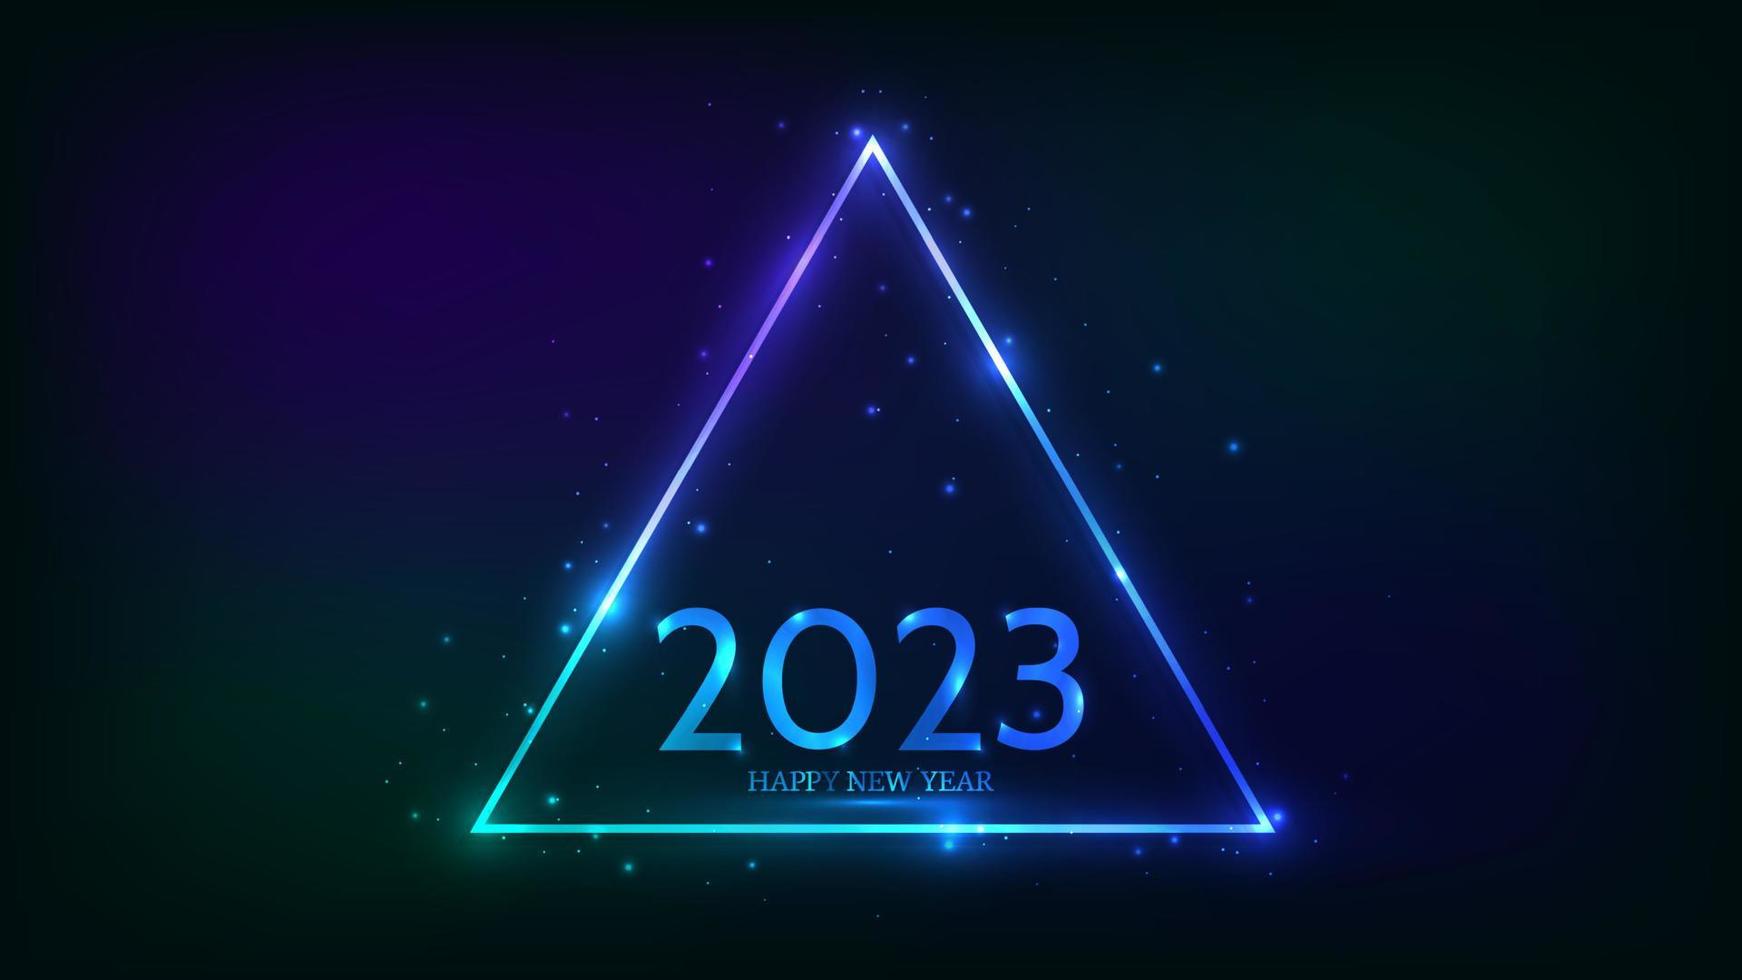 2023 Frohes neues Jahr Neonhintergrund. dreieckiger neonrahmen mit glänzenden effekten und funkeln für weihnachtsgrußkarten, flyer oder poster. Vektor-Illustration vektor